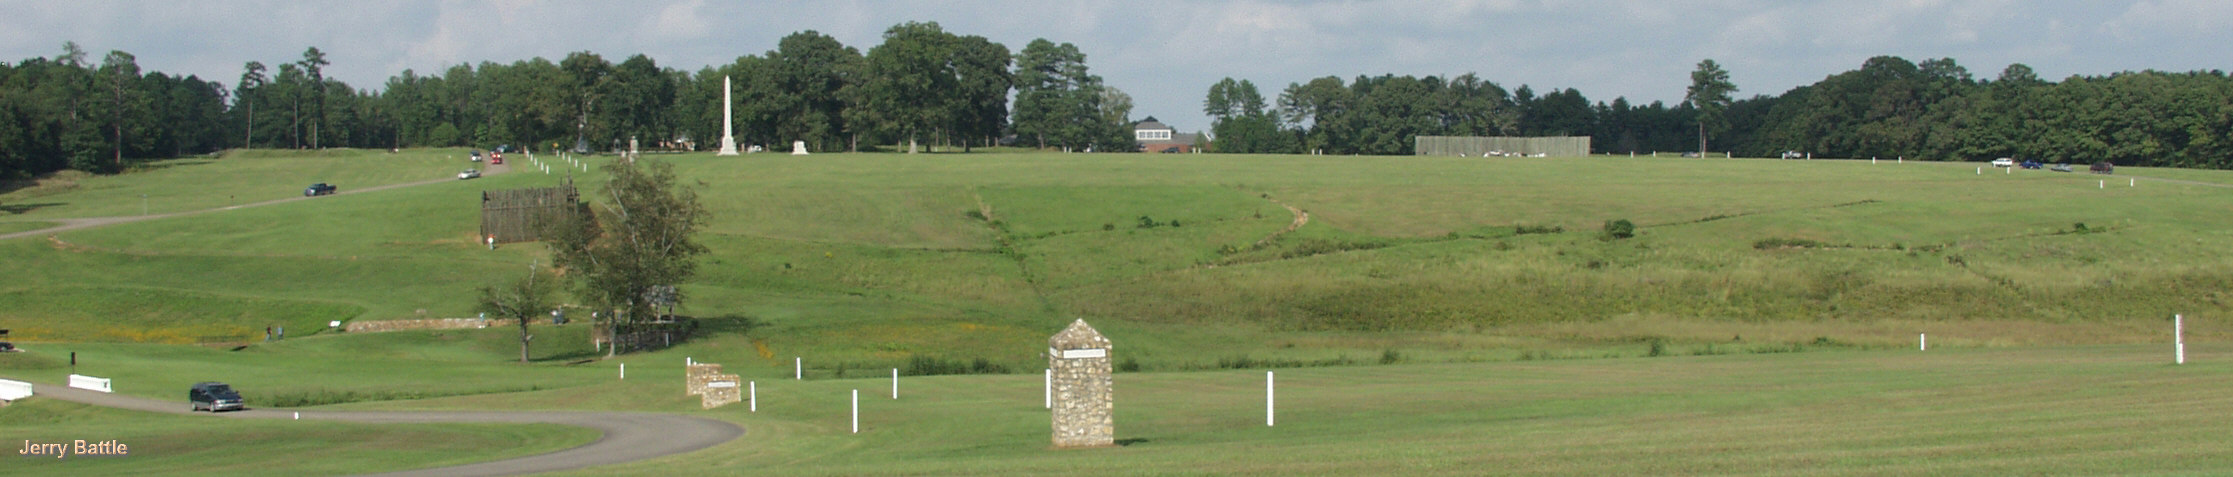 南北戦争Andersonsville捕虜収容所跡地は国立歴史公園になって保存されている